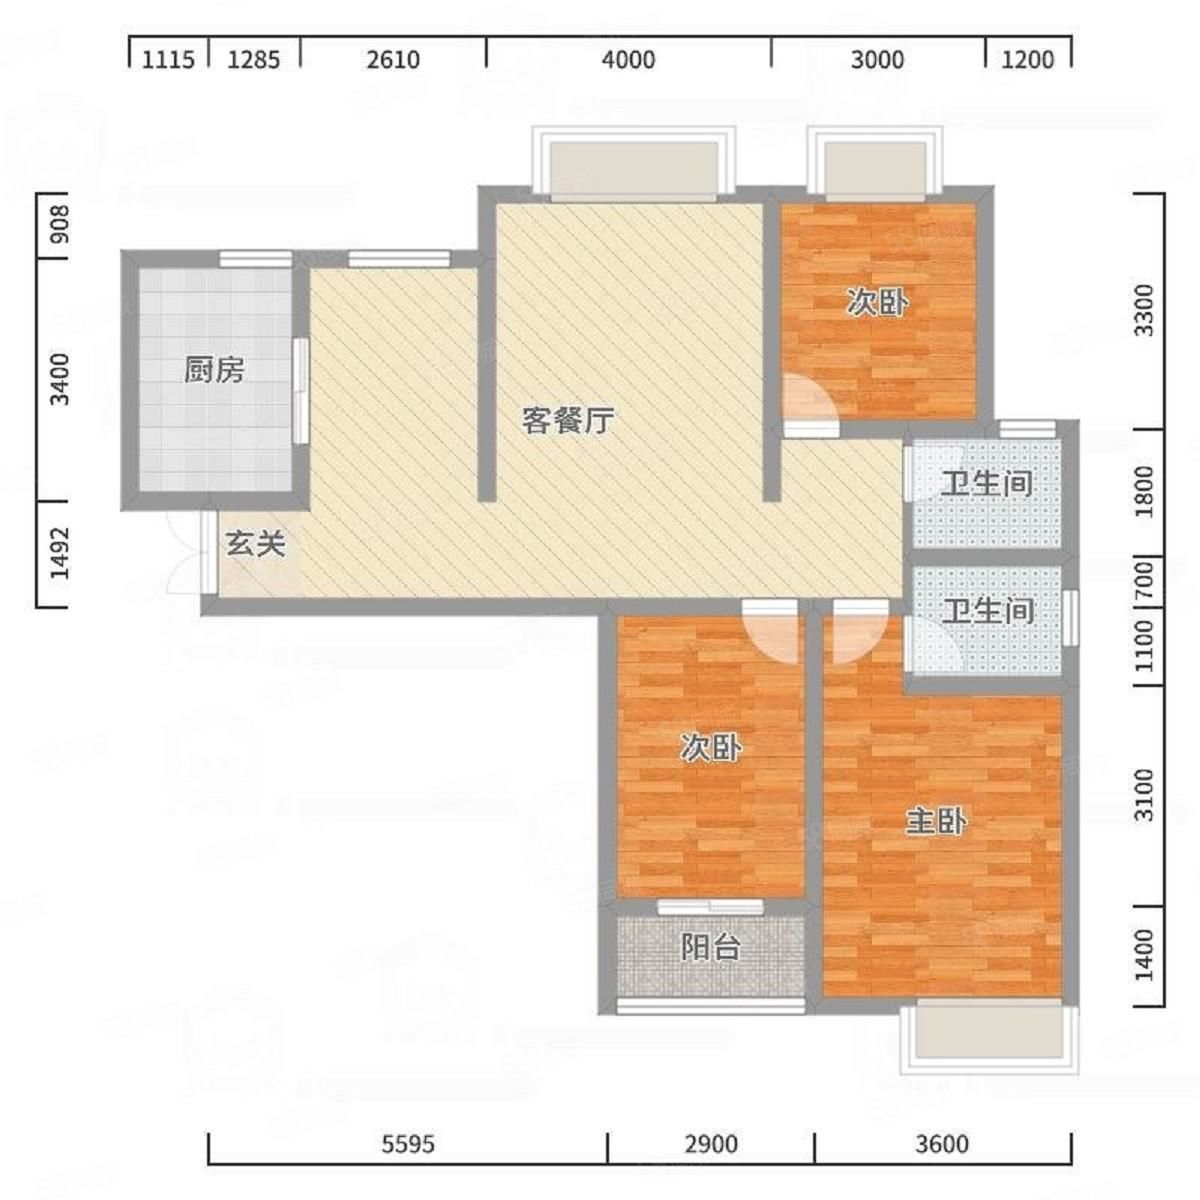 吾悦广场隔壁精装高层三居室 家具家电齐全